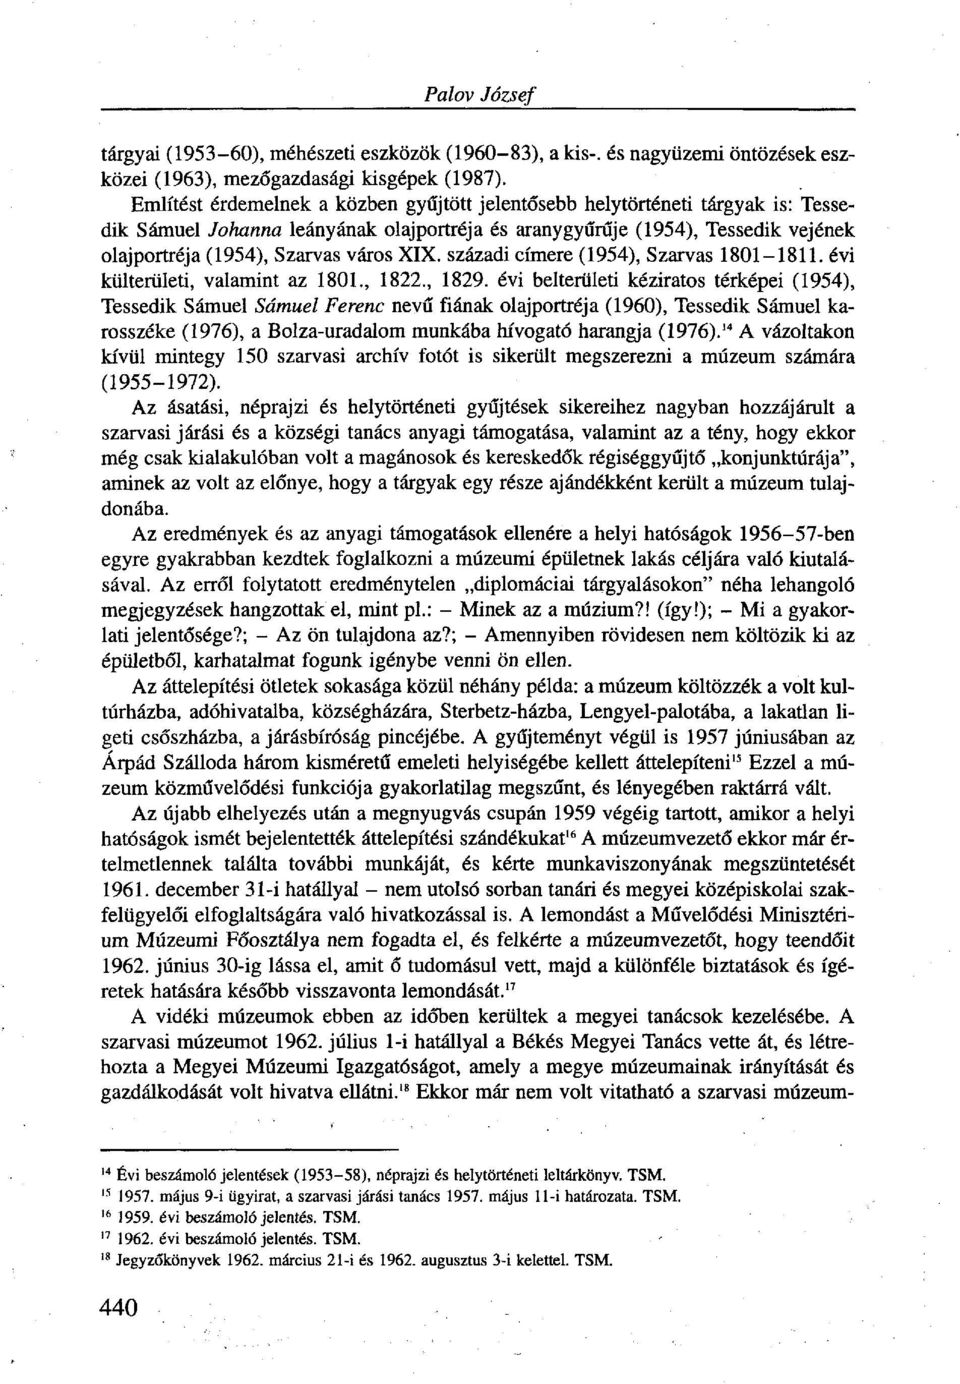 XIX. századi címere (1954), Szarvas 1801-1811. évi külterületi, valamint az 1801., 1822., 1829.